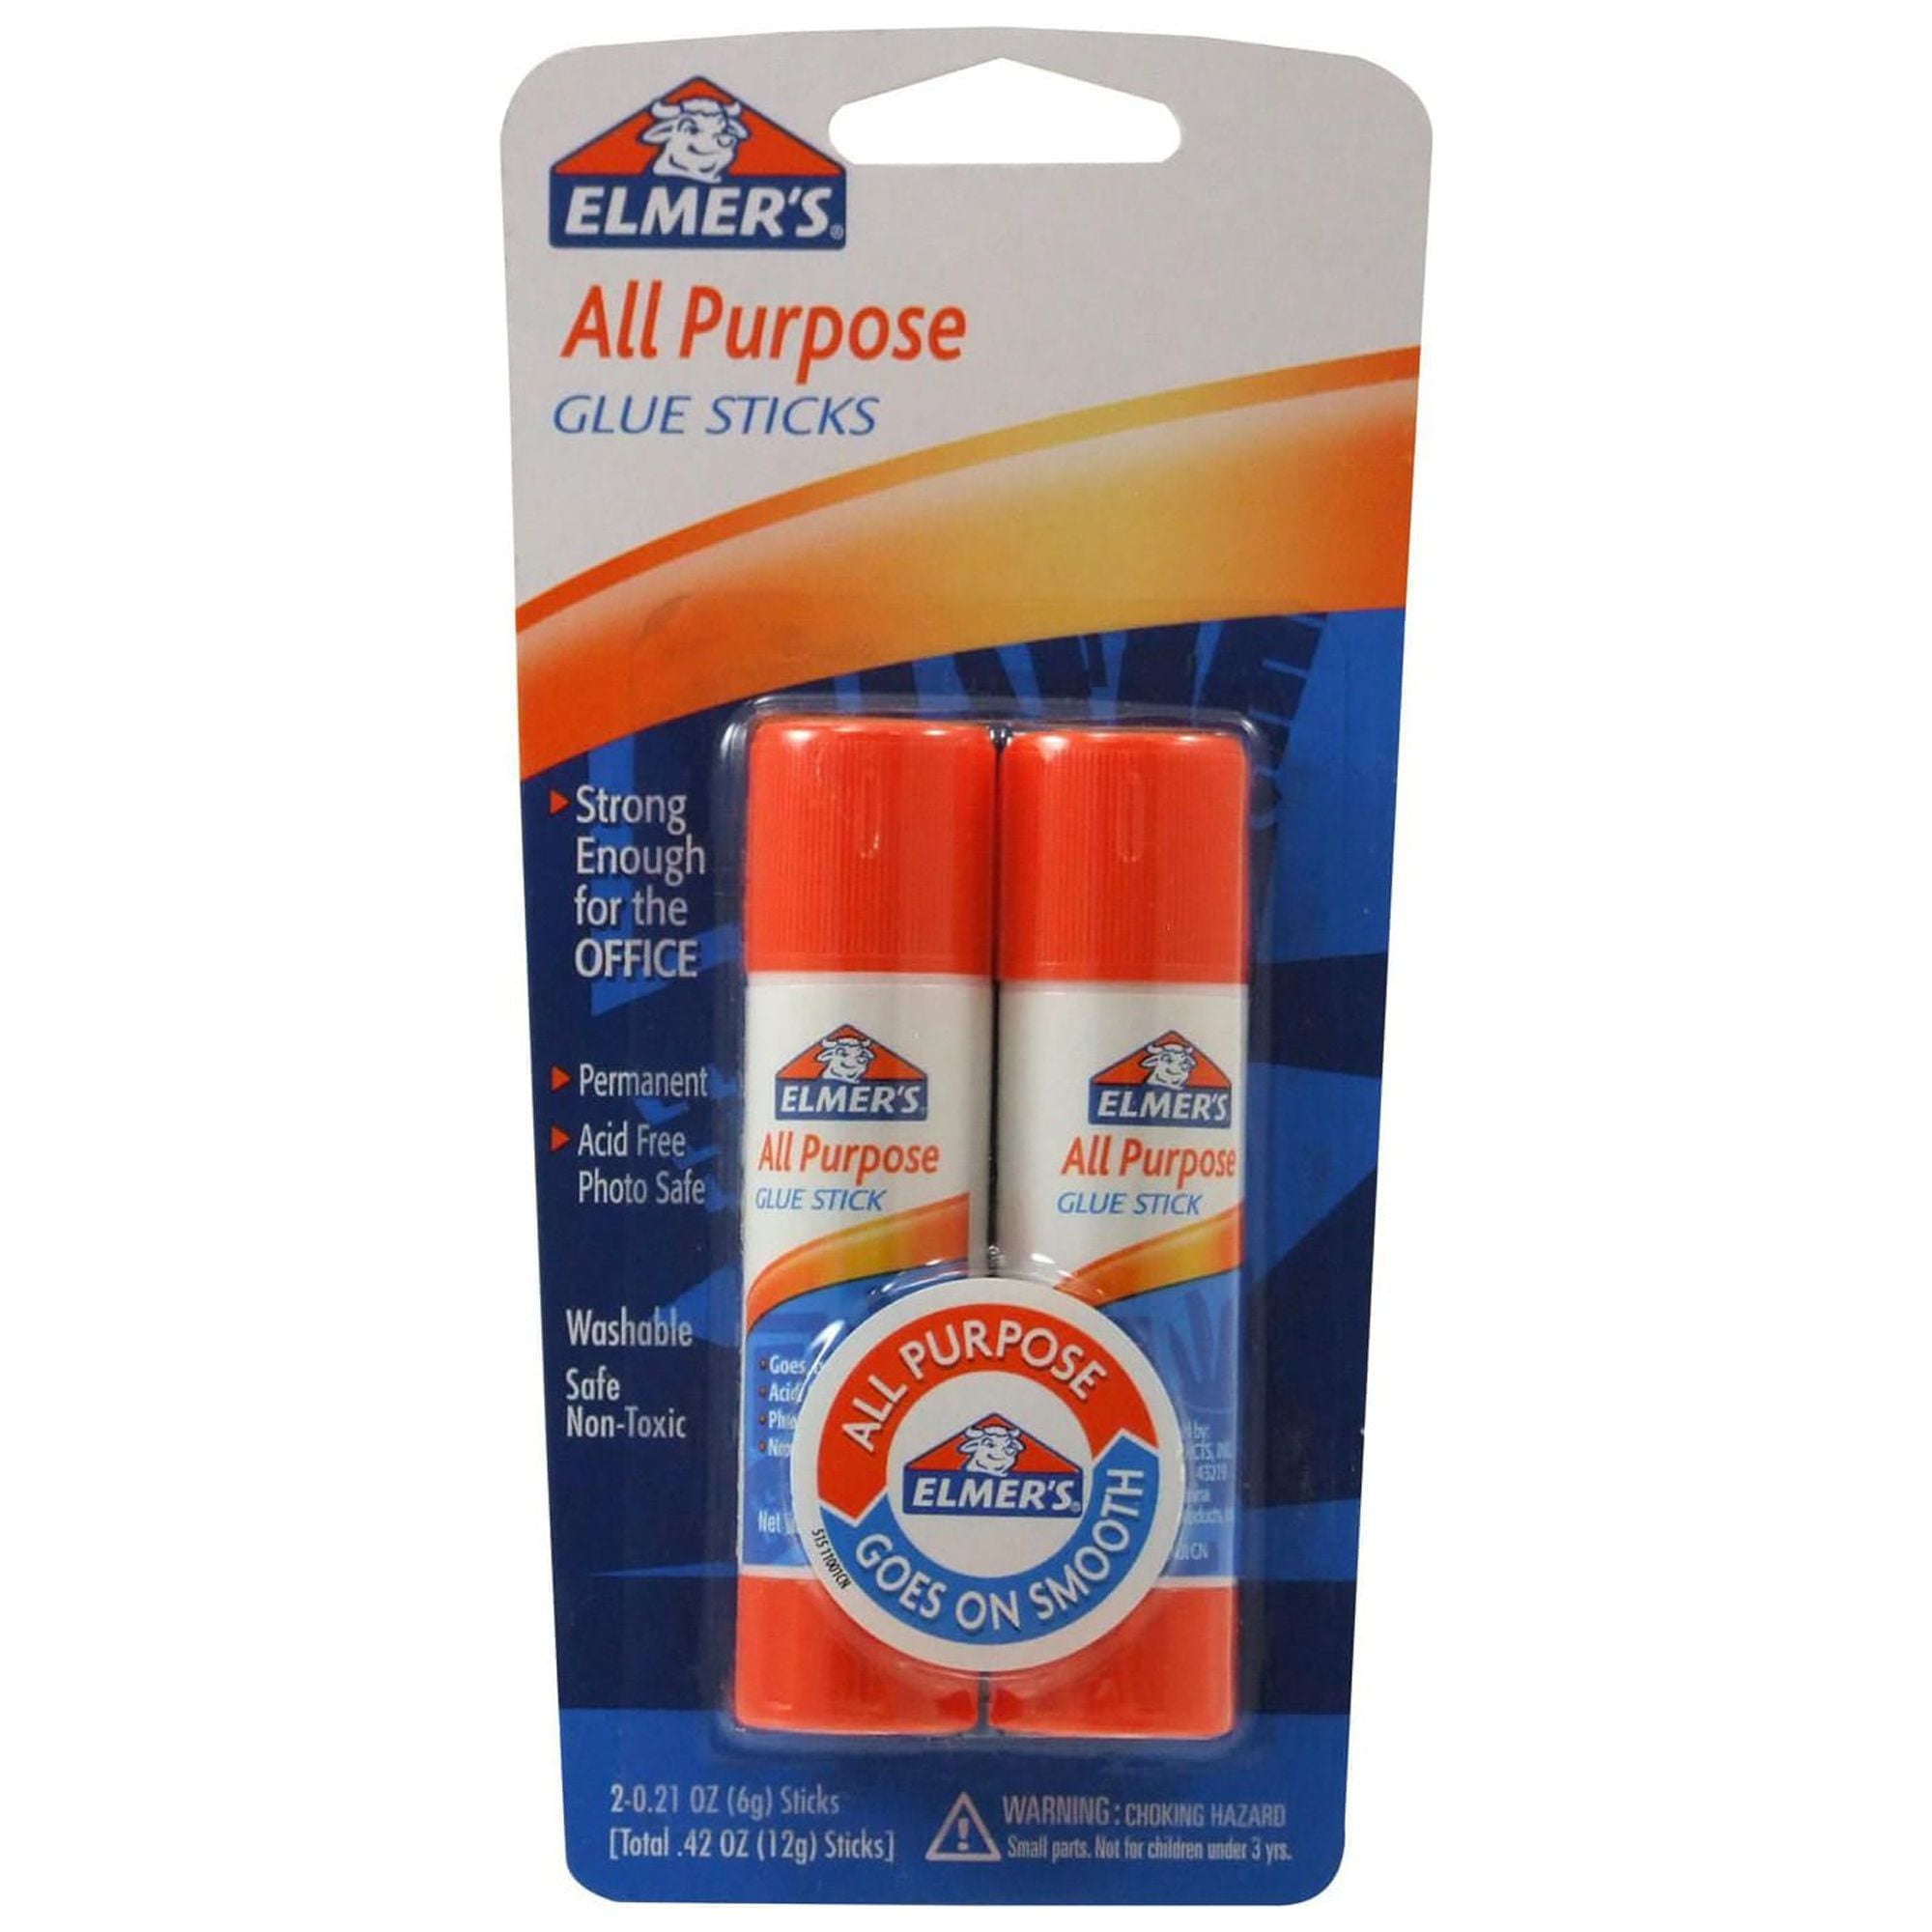 Elmer's All Purpose Glue Stick - 2 pack, 0.21 oz sticks